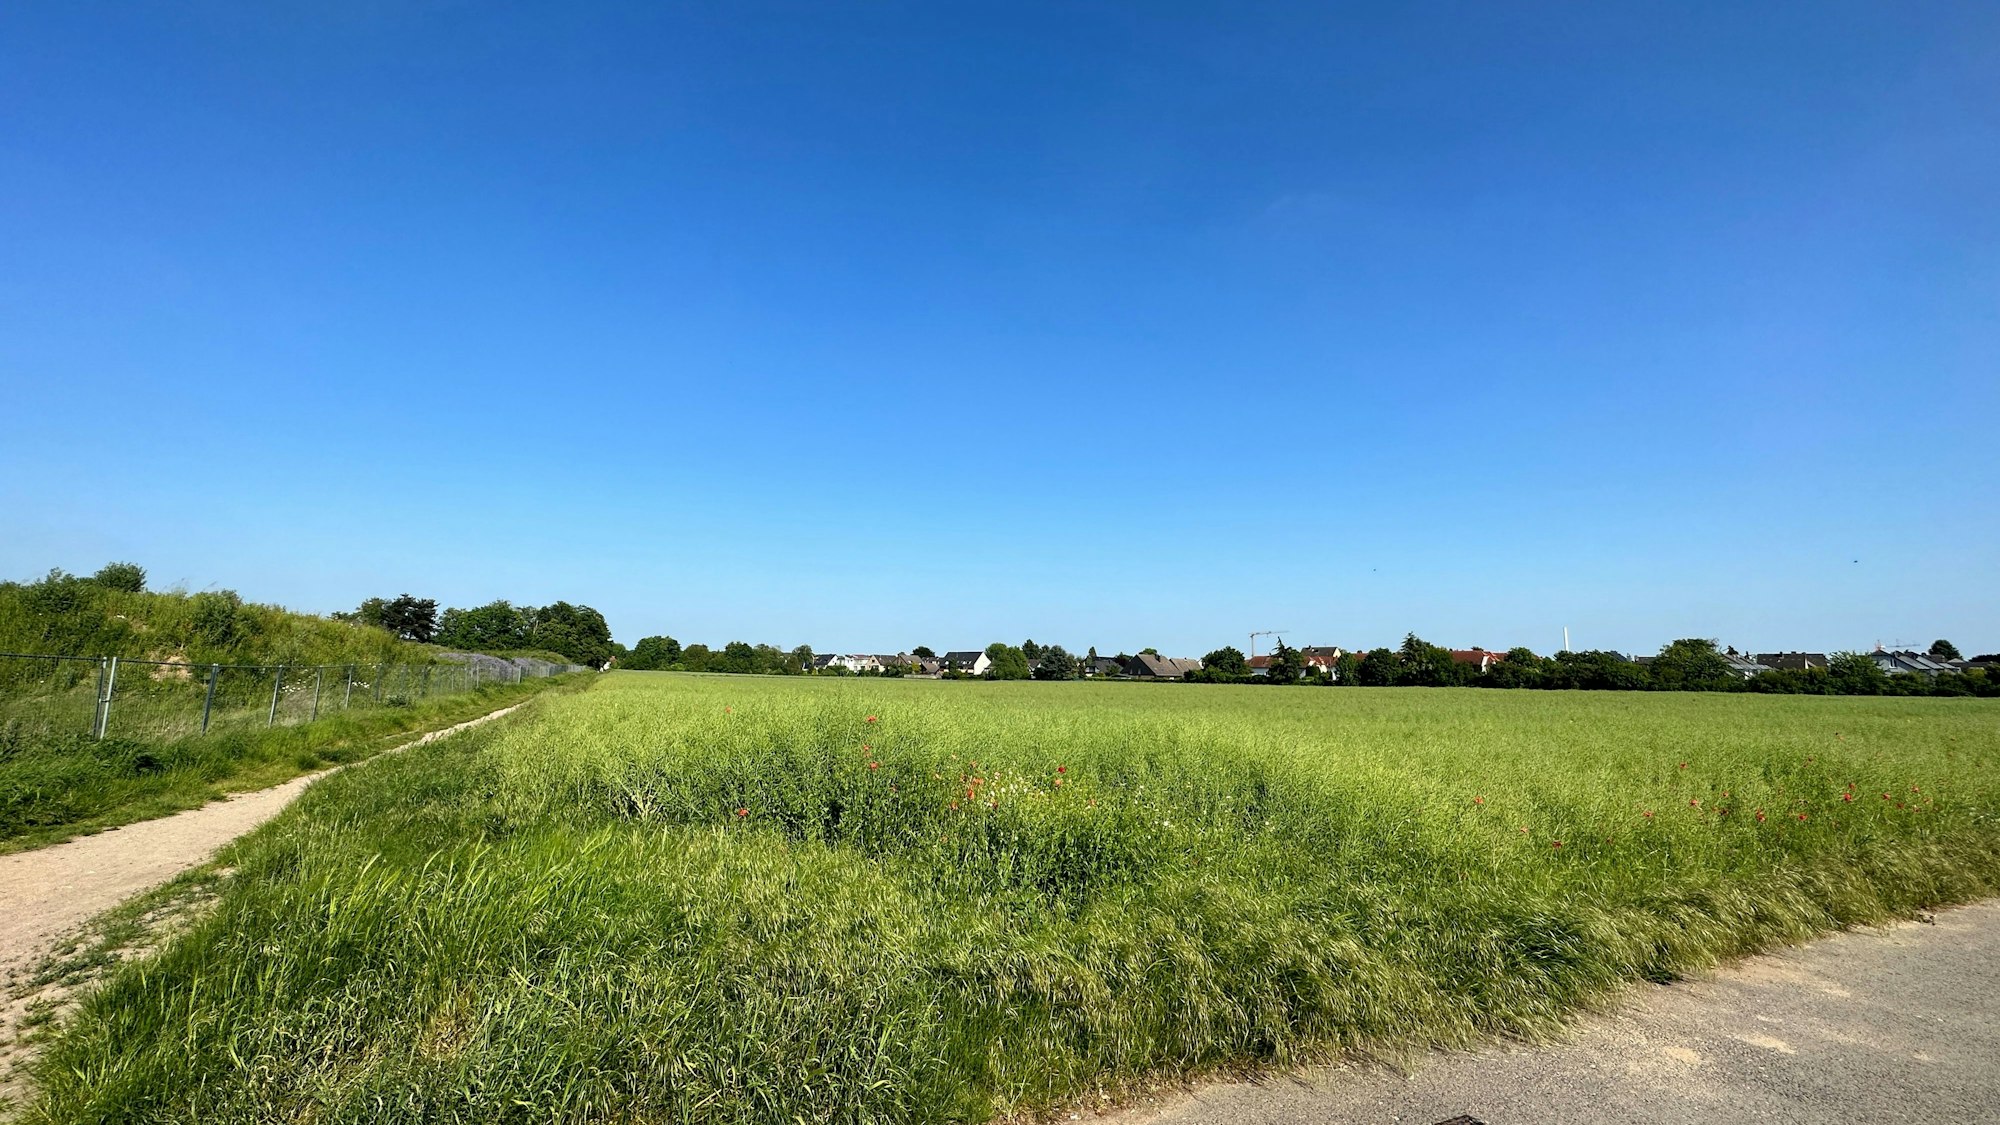 Man sieht eine saftige grüne Wiese, in der Ferne den Rand der Wohnbebauung des heutigen Ortes Rondorf.